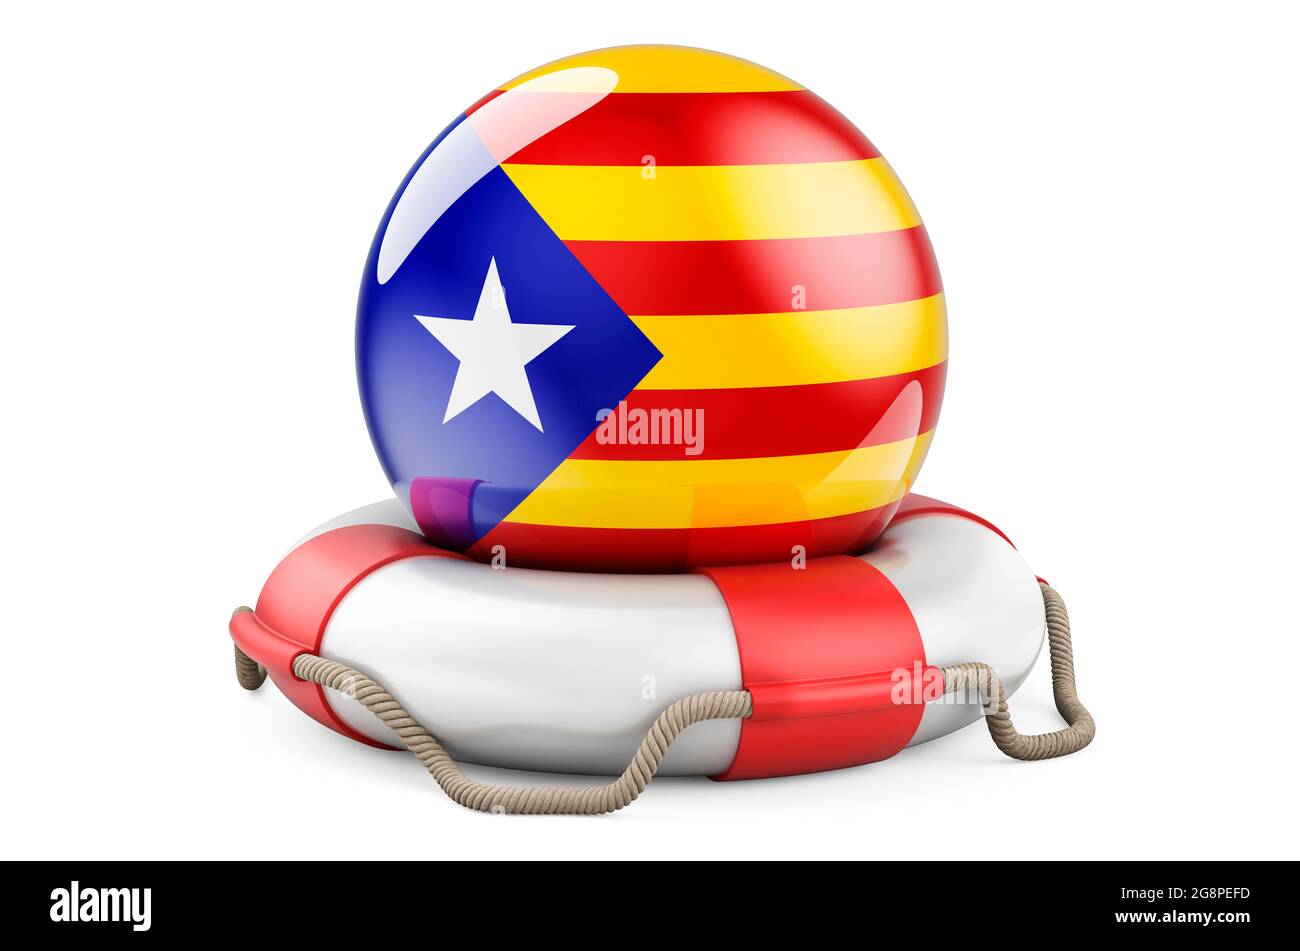 Ceinture de sauvetage avec drapeau catalan. Concept de sécurité, d'aide et de protection de la Catalogne. Rendu 3D isolé sur fond blanc Banque D'Images